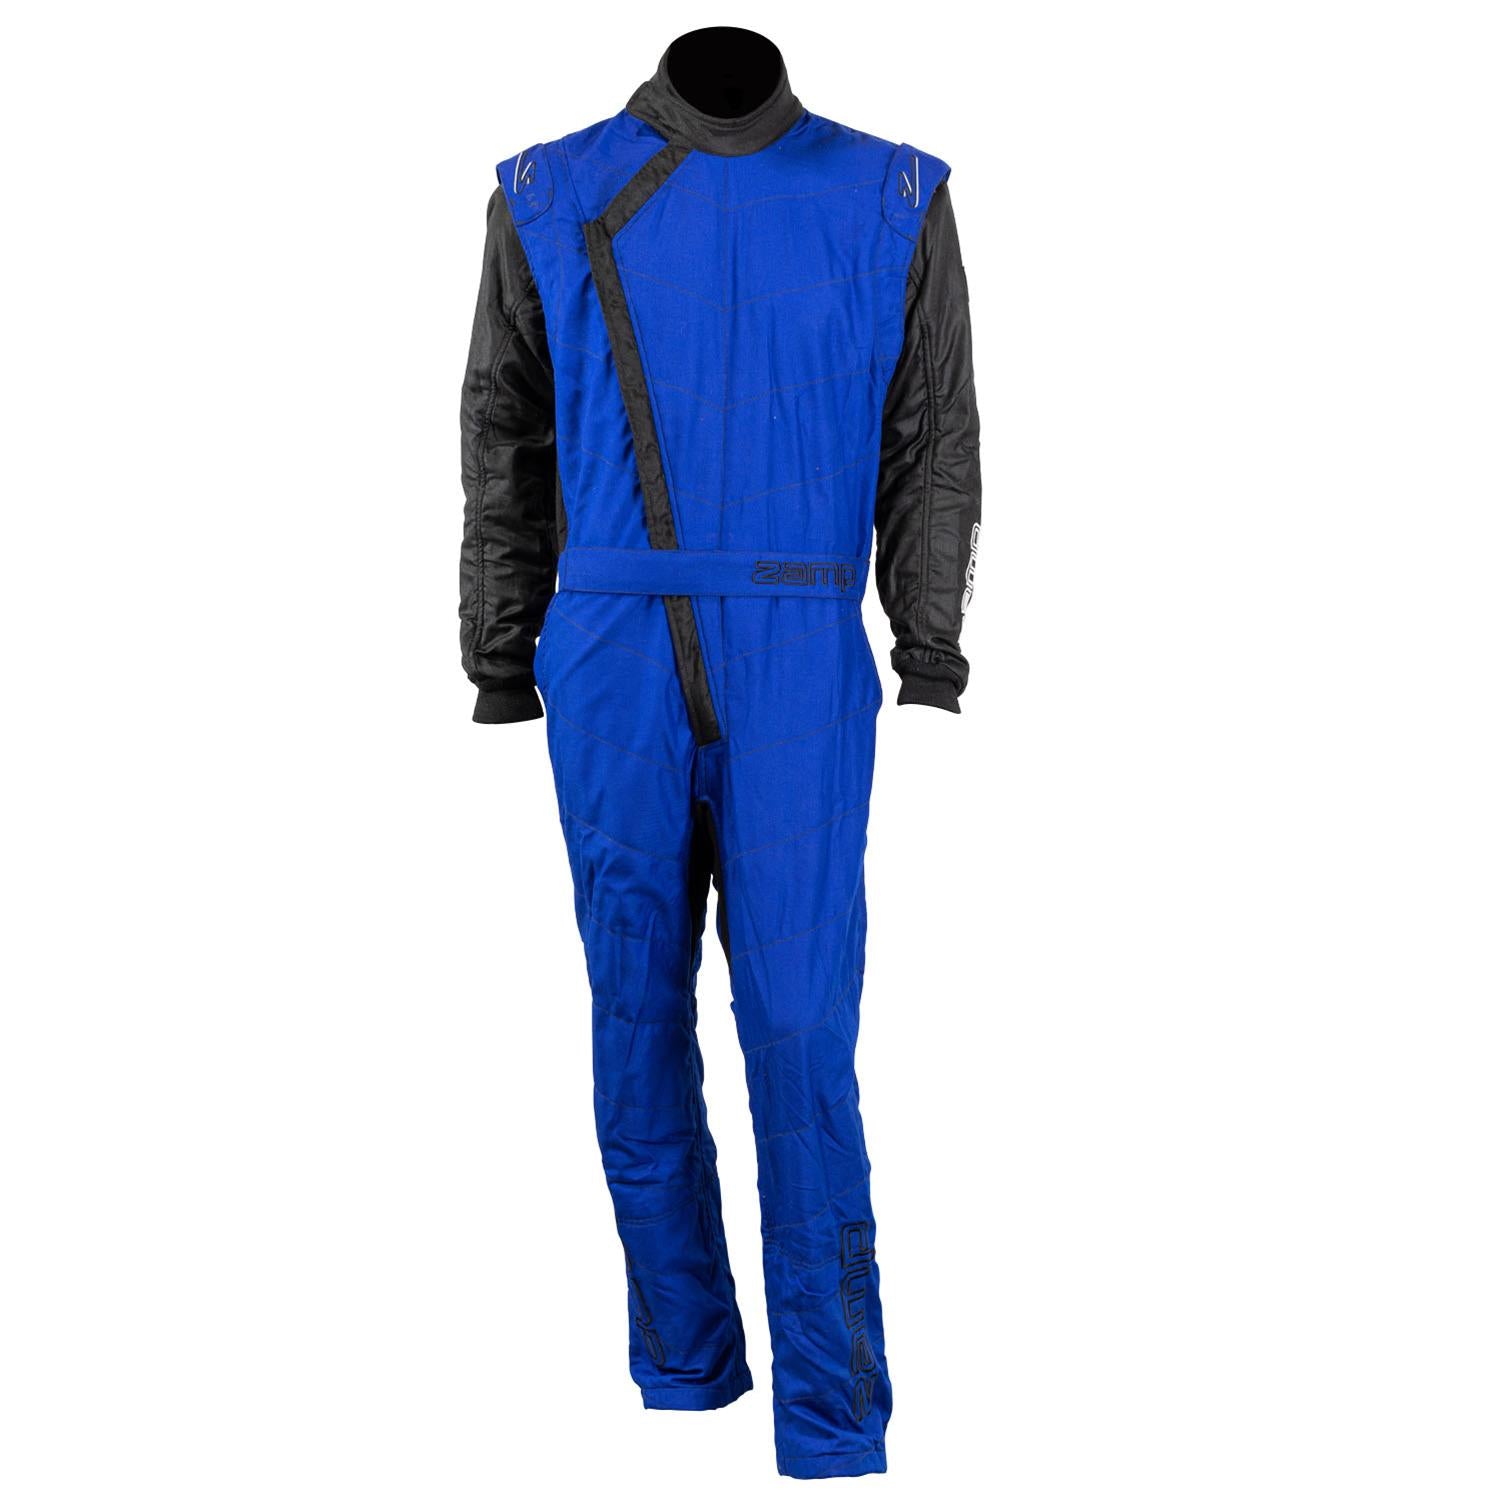 ZAMP Racing ZR-40 Race Suit Blue R07C04L